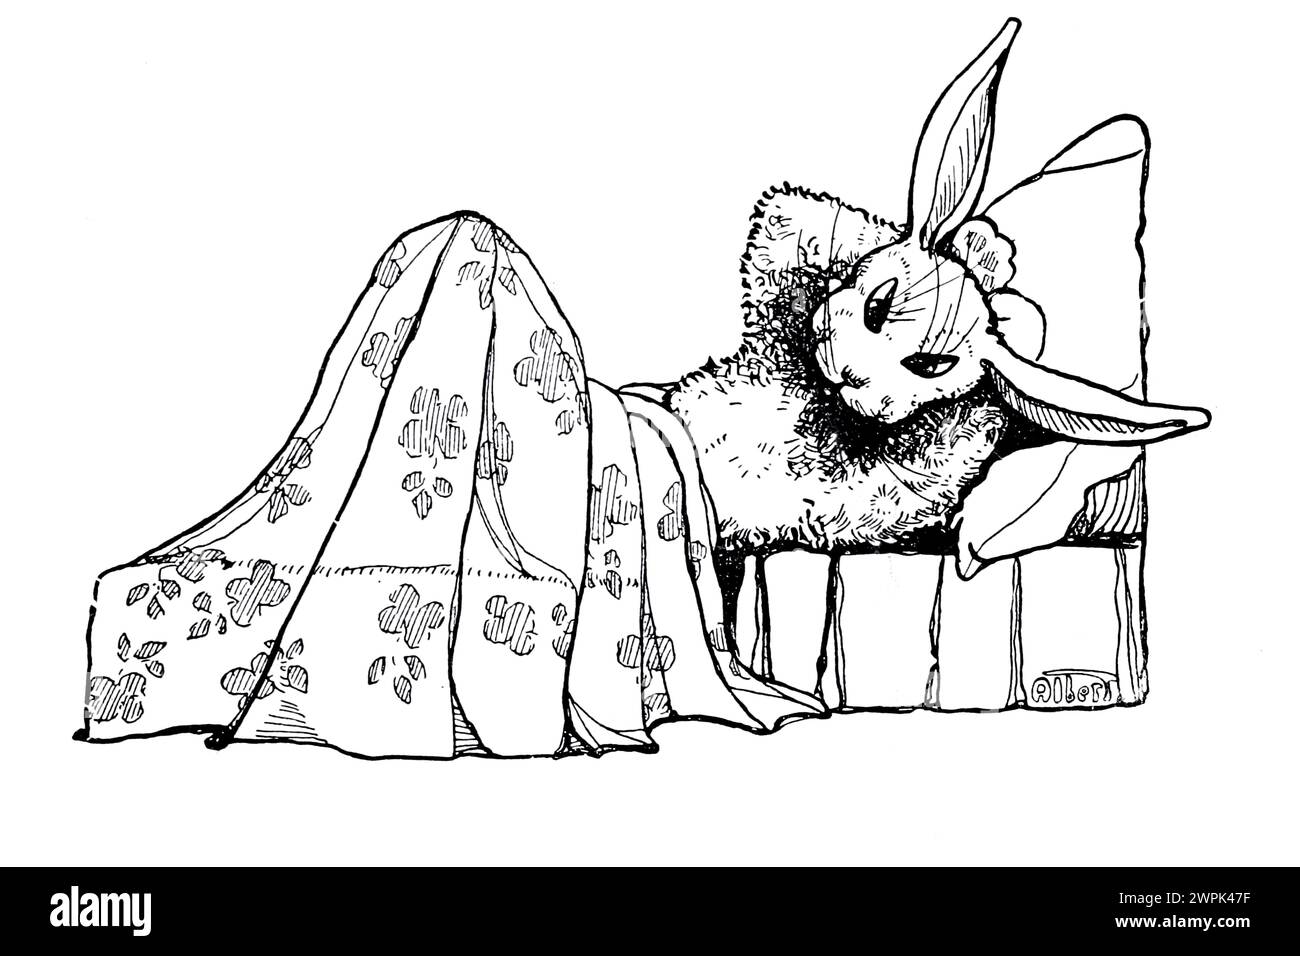 Peter Rabbit et sa ma par Louise A Field, illustré par Virginia Albert ; basé sur les personnages de Beatrix Potter Peter Rabbit s'enfuit à cause des règles strictes de sa mère, mais ne va pas très loin parce qu'il voyage en cercle. Banque D'Images